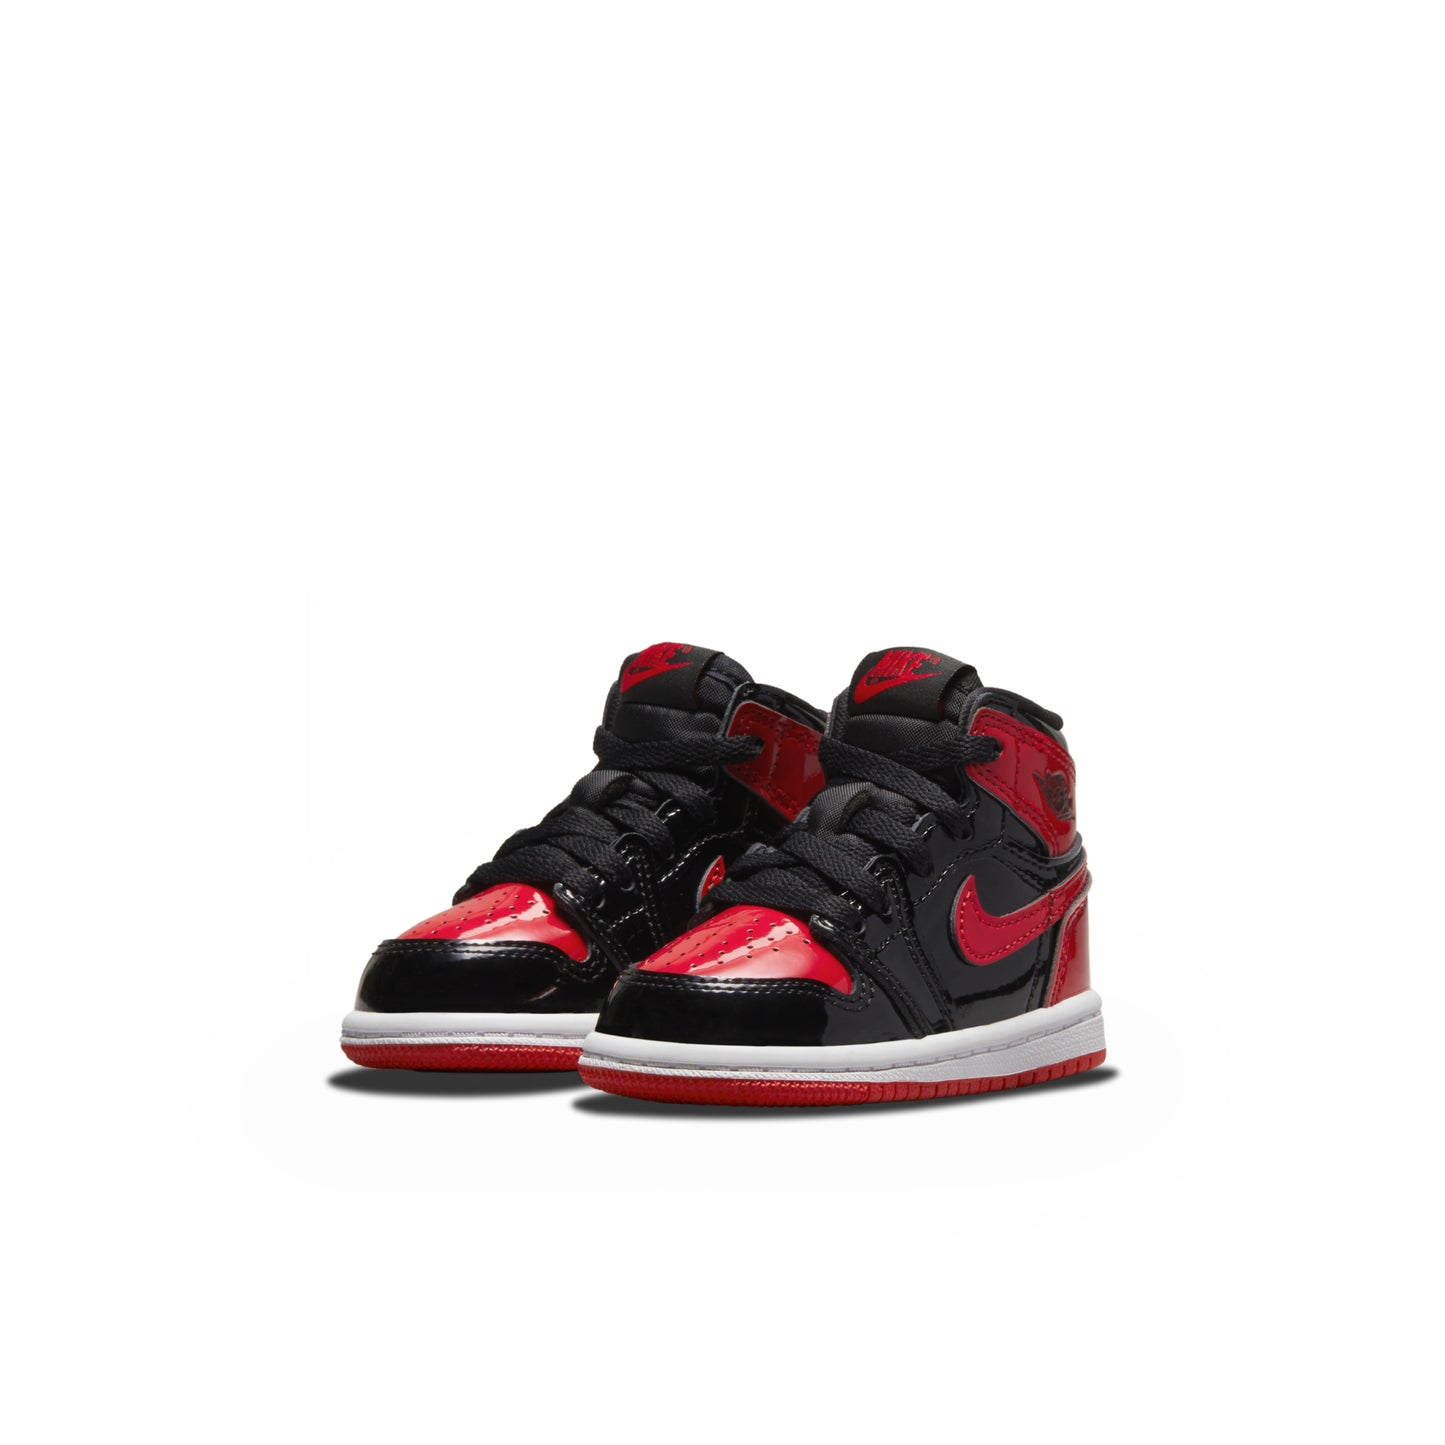 Nike Air Jordan 1 Retro High OG TD "Patent Bred"